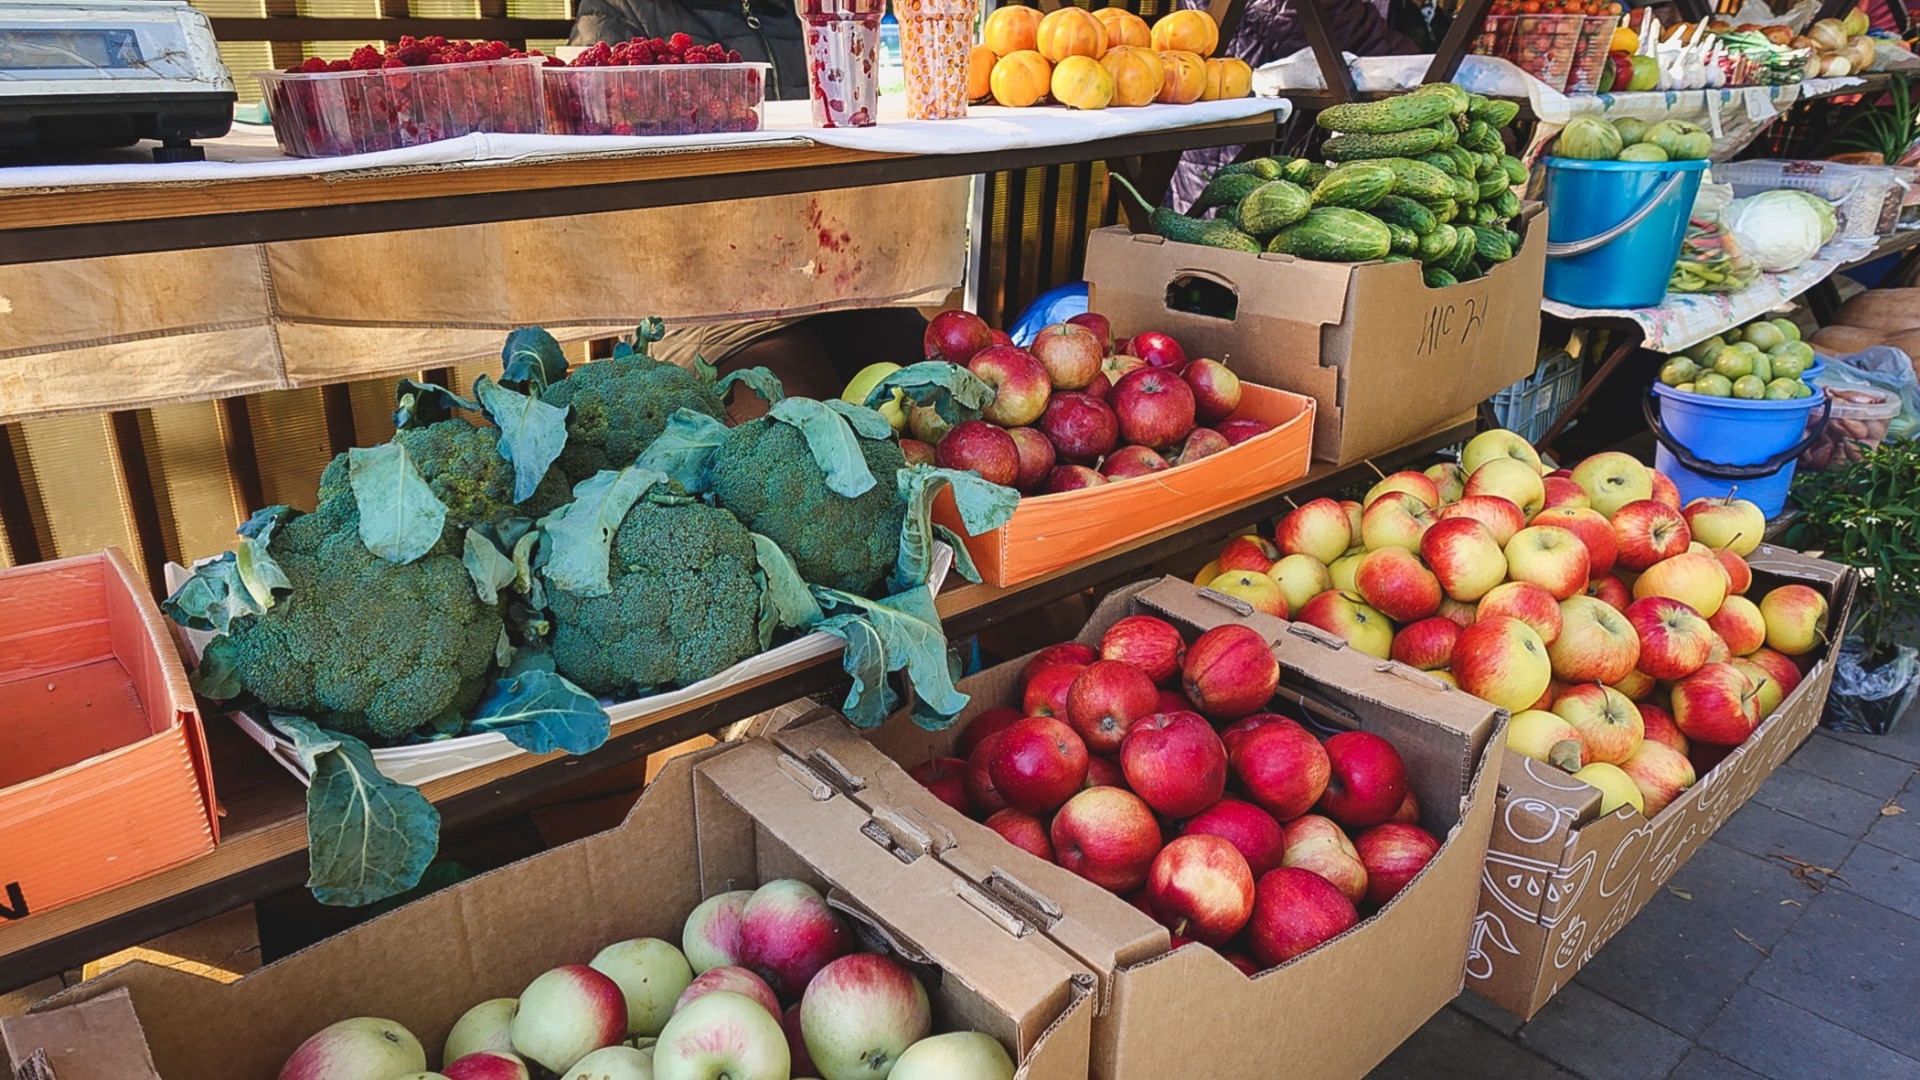 Фрукты и овощи на рынке могут содержать опасные химические соединения.